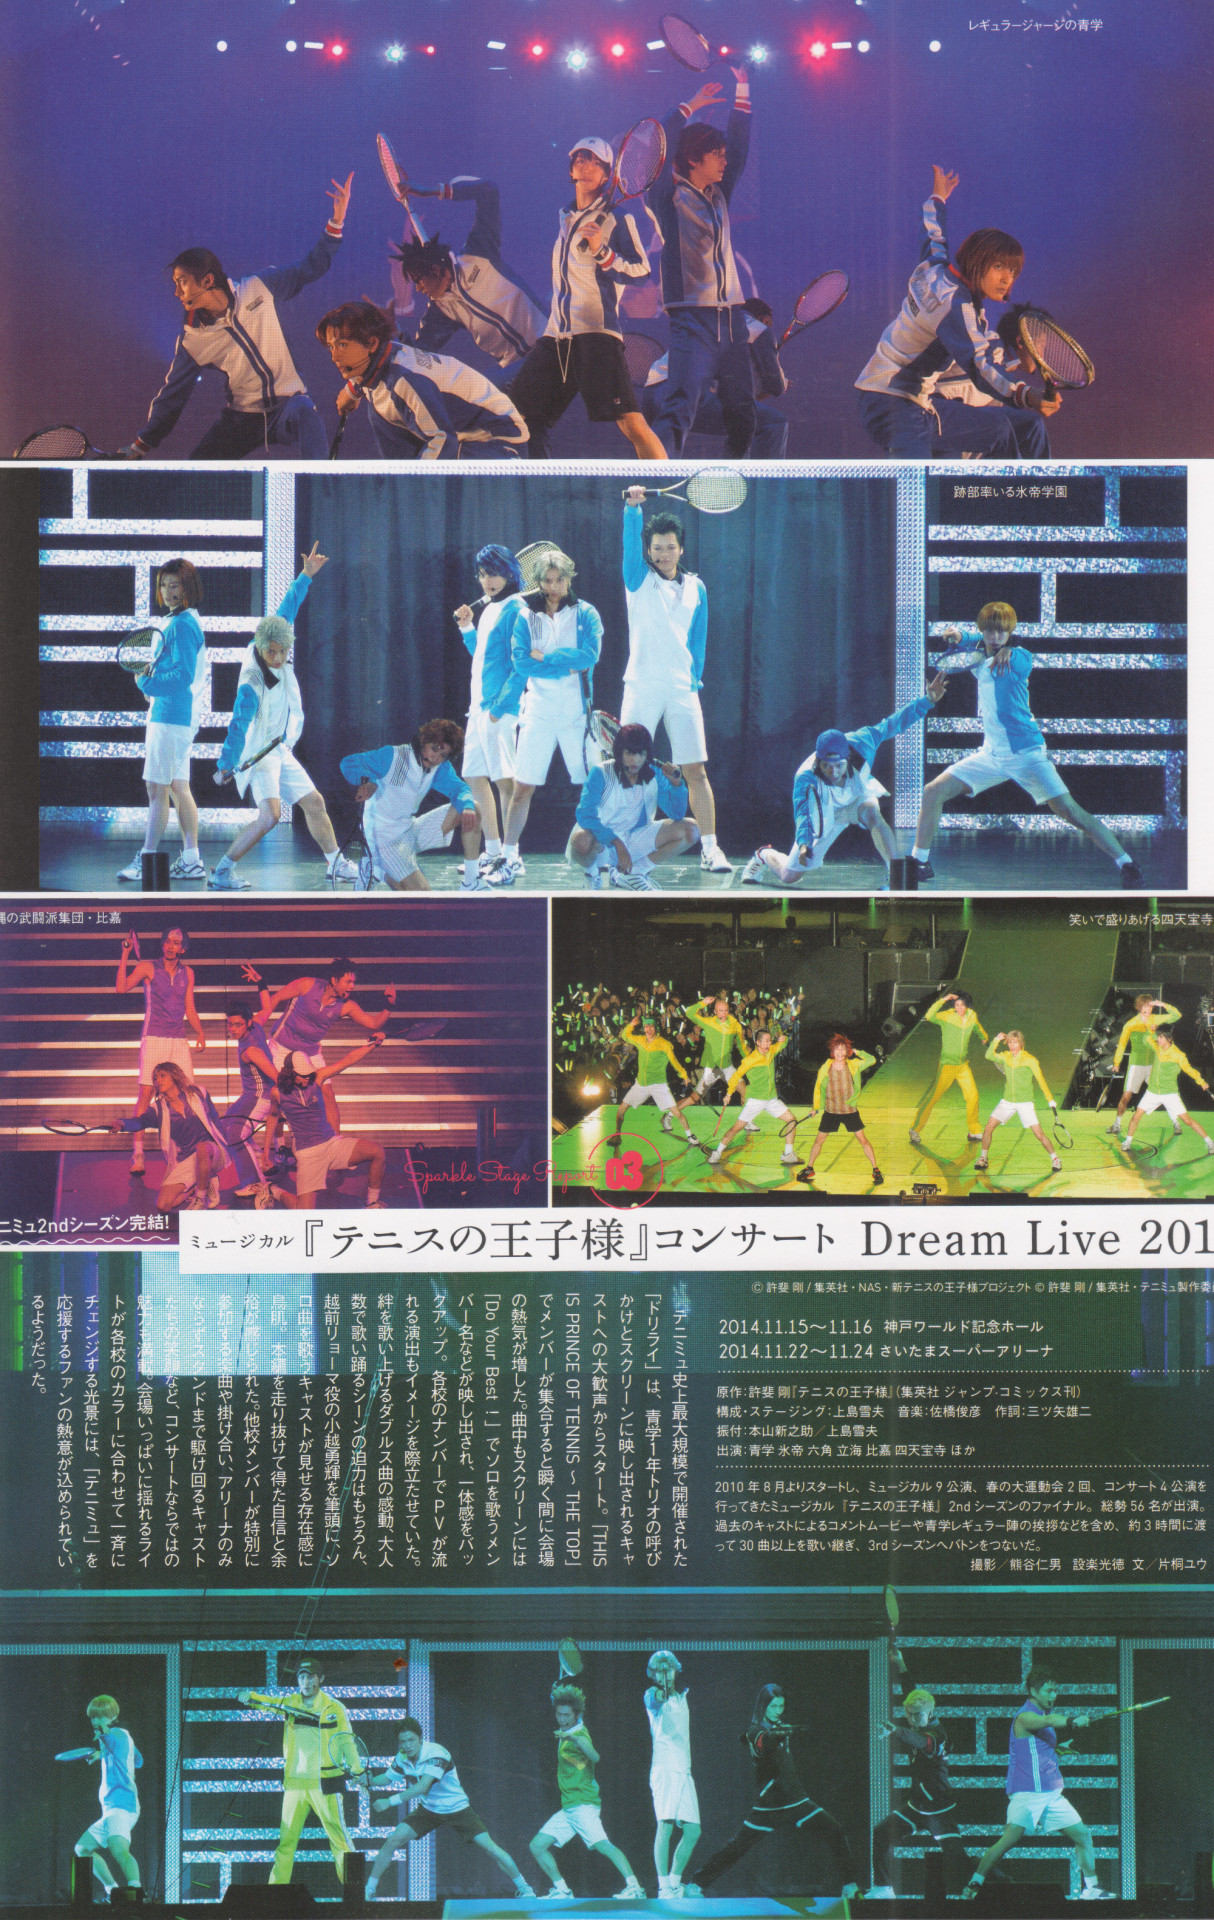 Silverwind Silver Shining Net Tenimyu 2nd Season Dream Live 14 Report Scanned